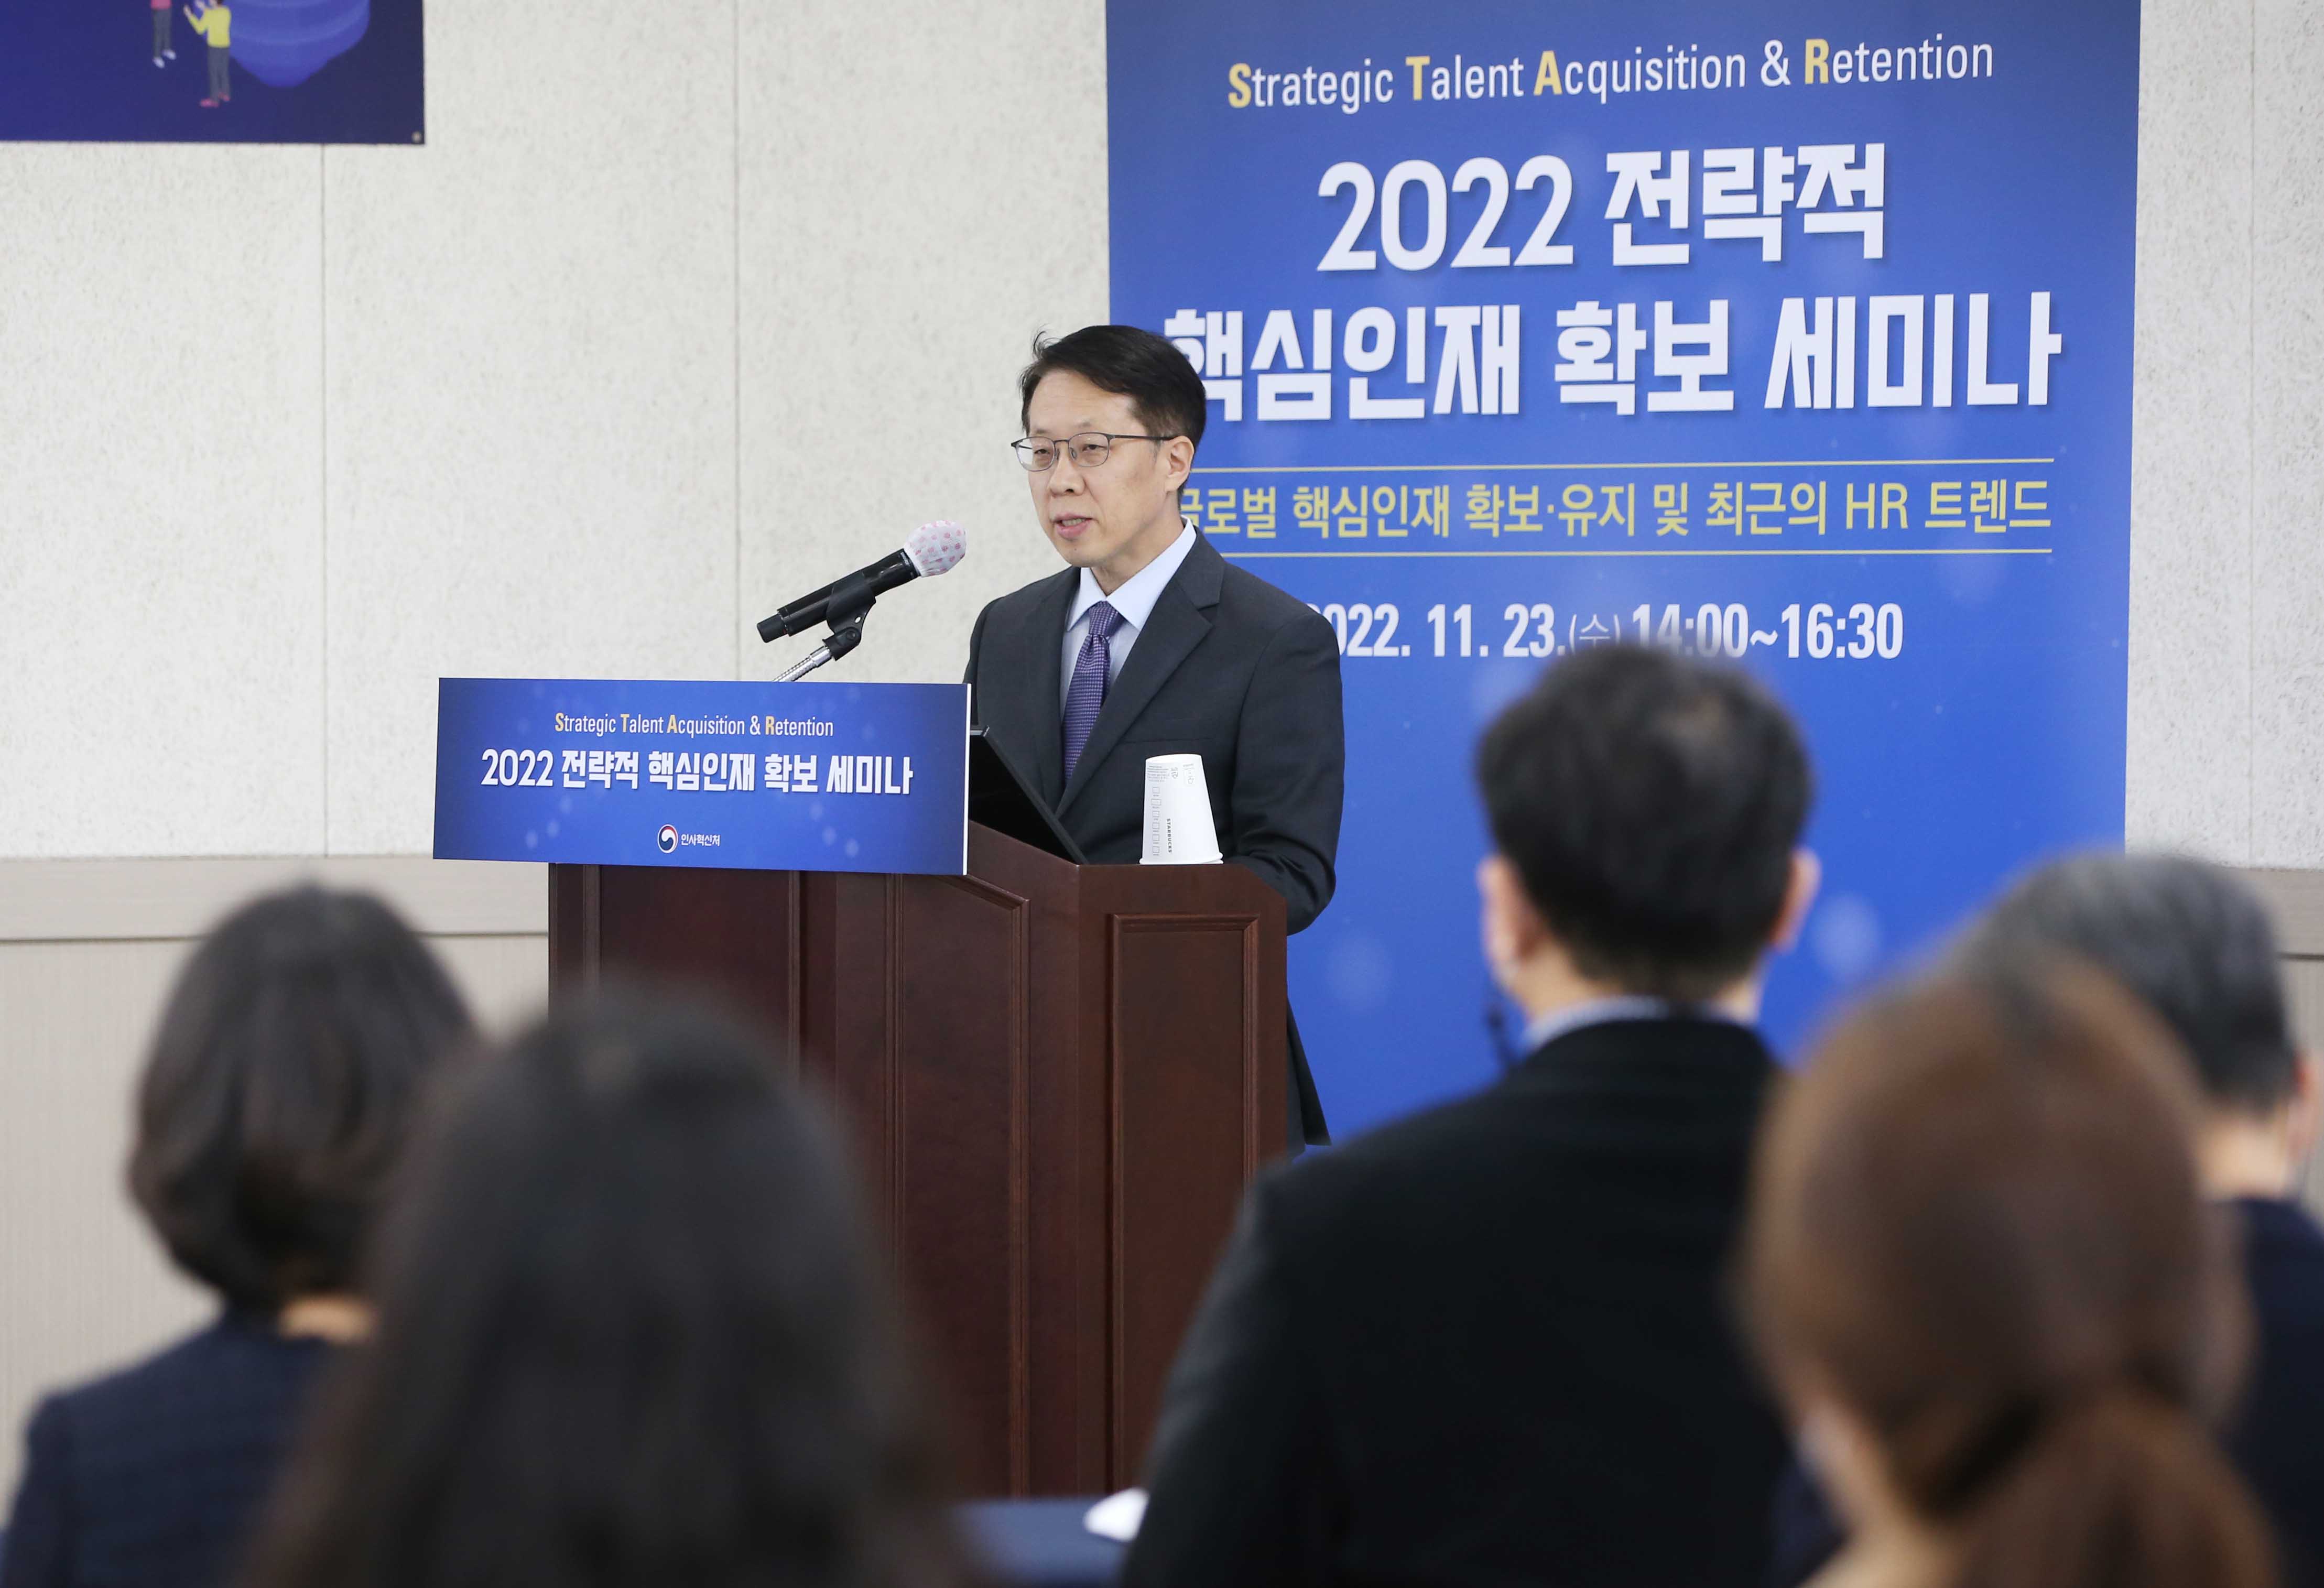 조성주 인사혁신처 차장이 11월 23일 서울 강남구 세텍(SETEC)에서 열린 '2022 전략적 핵심인재 확보 세미나'에서 인사말을 하는 모습